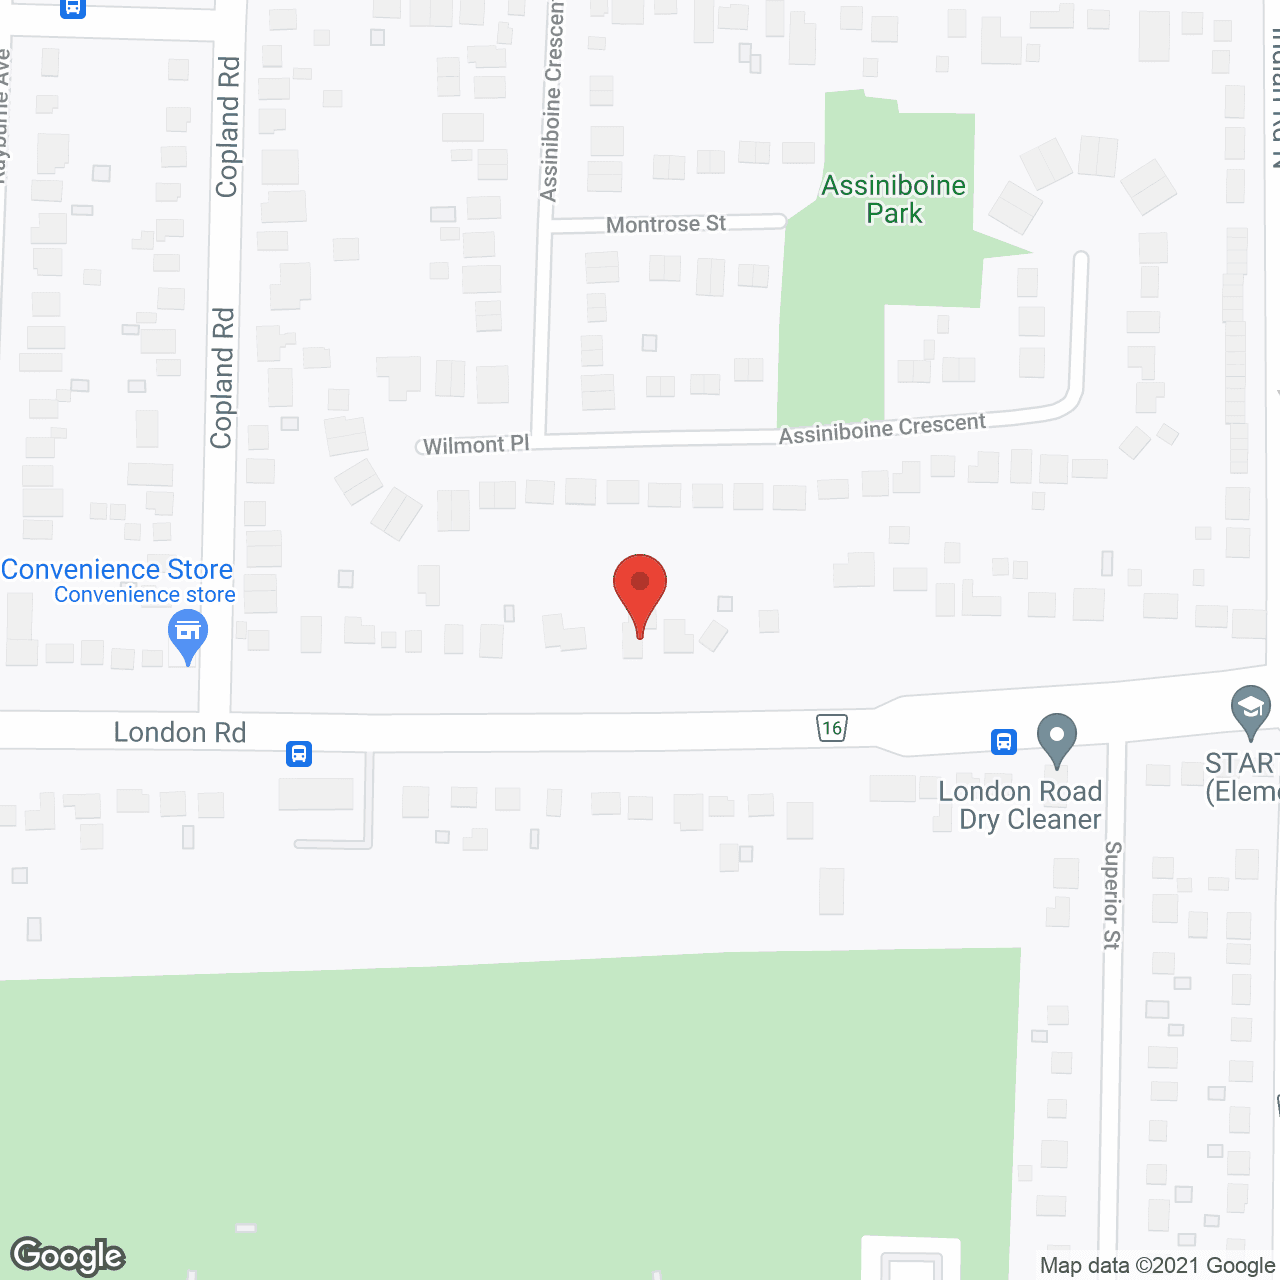 Diane Zeeuws Place in google map